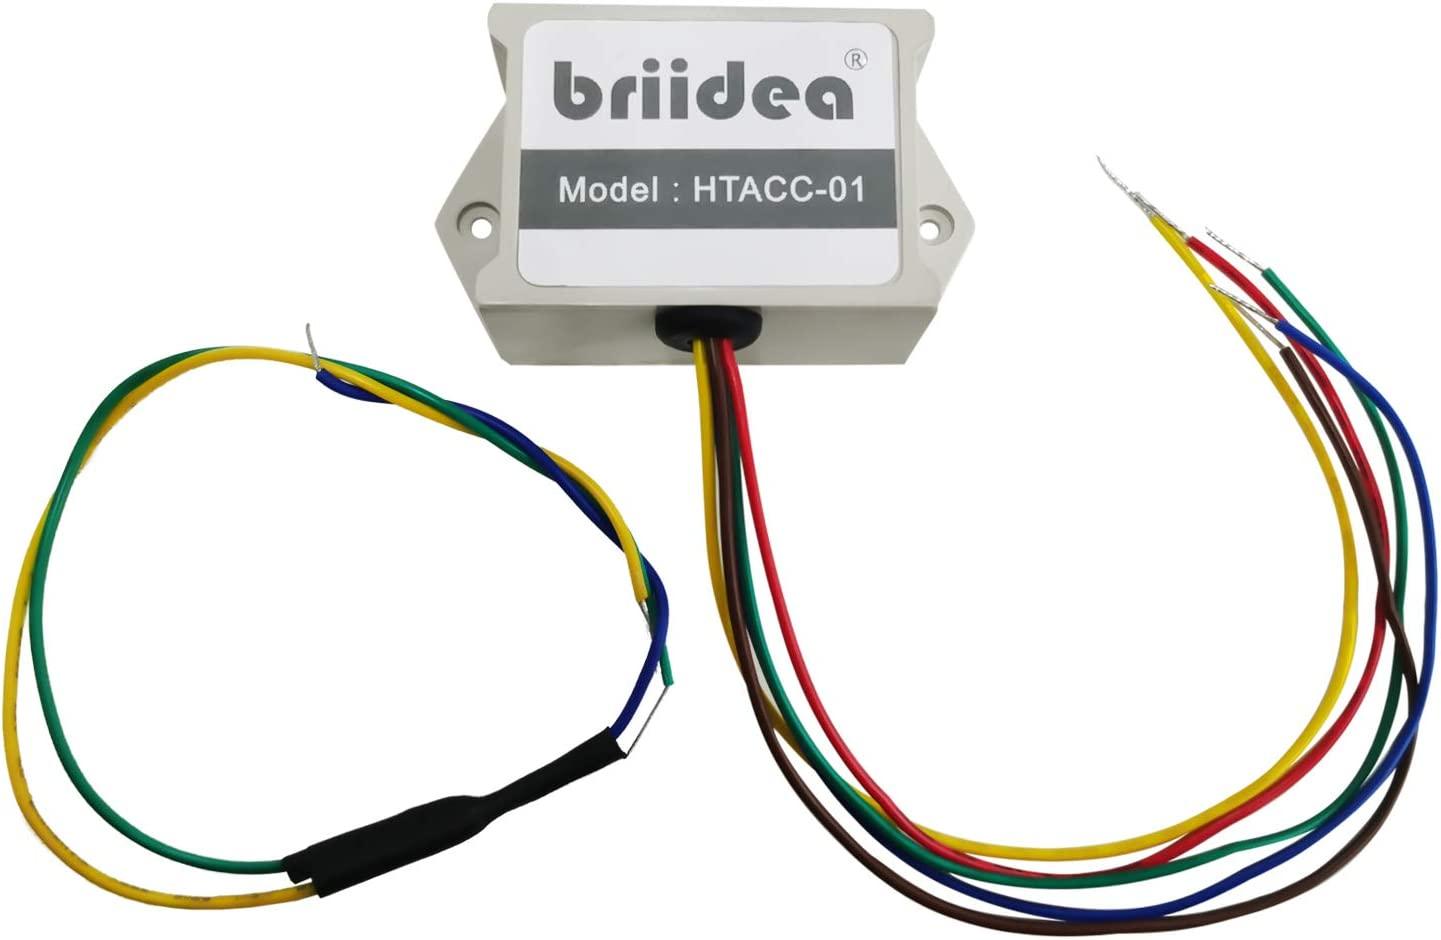 Add-A-Wire Accessory, Briidea Common Wire Kit for All 24VAC Thermostats (4 to 5 Wires), White - briidea